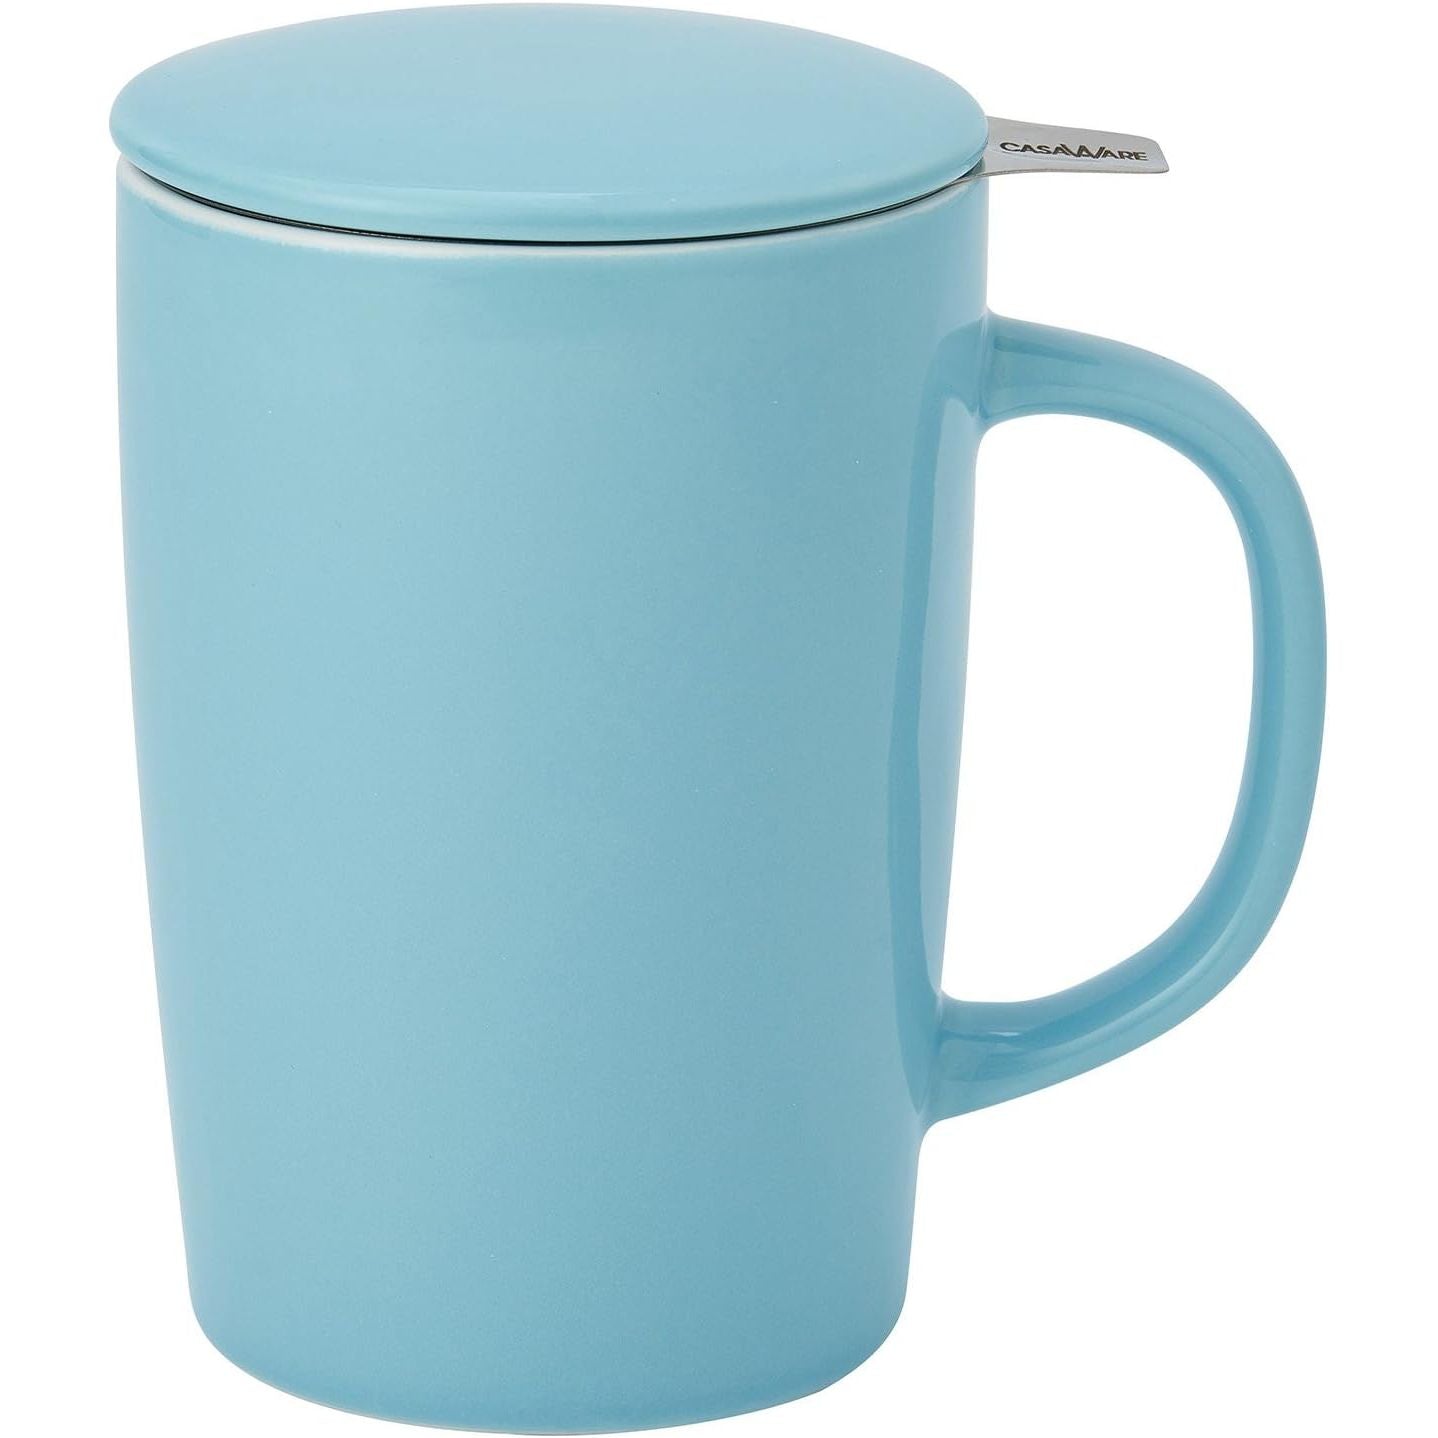 Mug + Infuser, Spring Pink or Blue, 16 oz